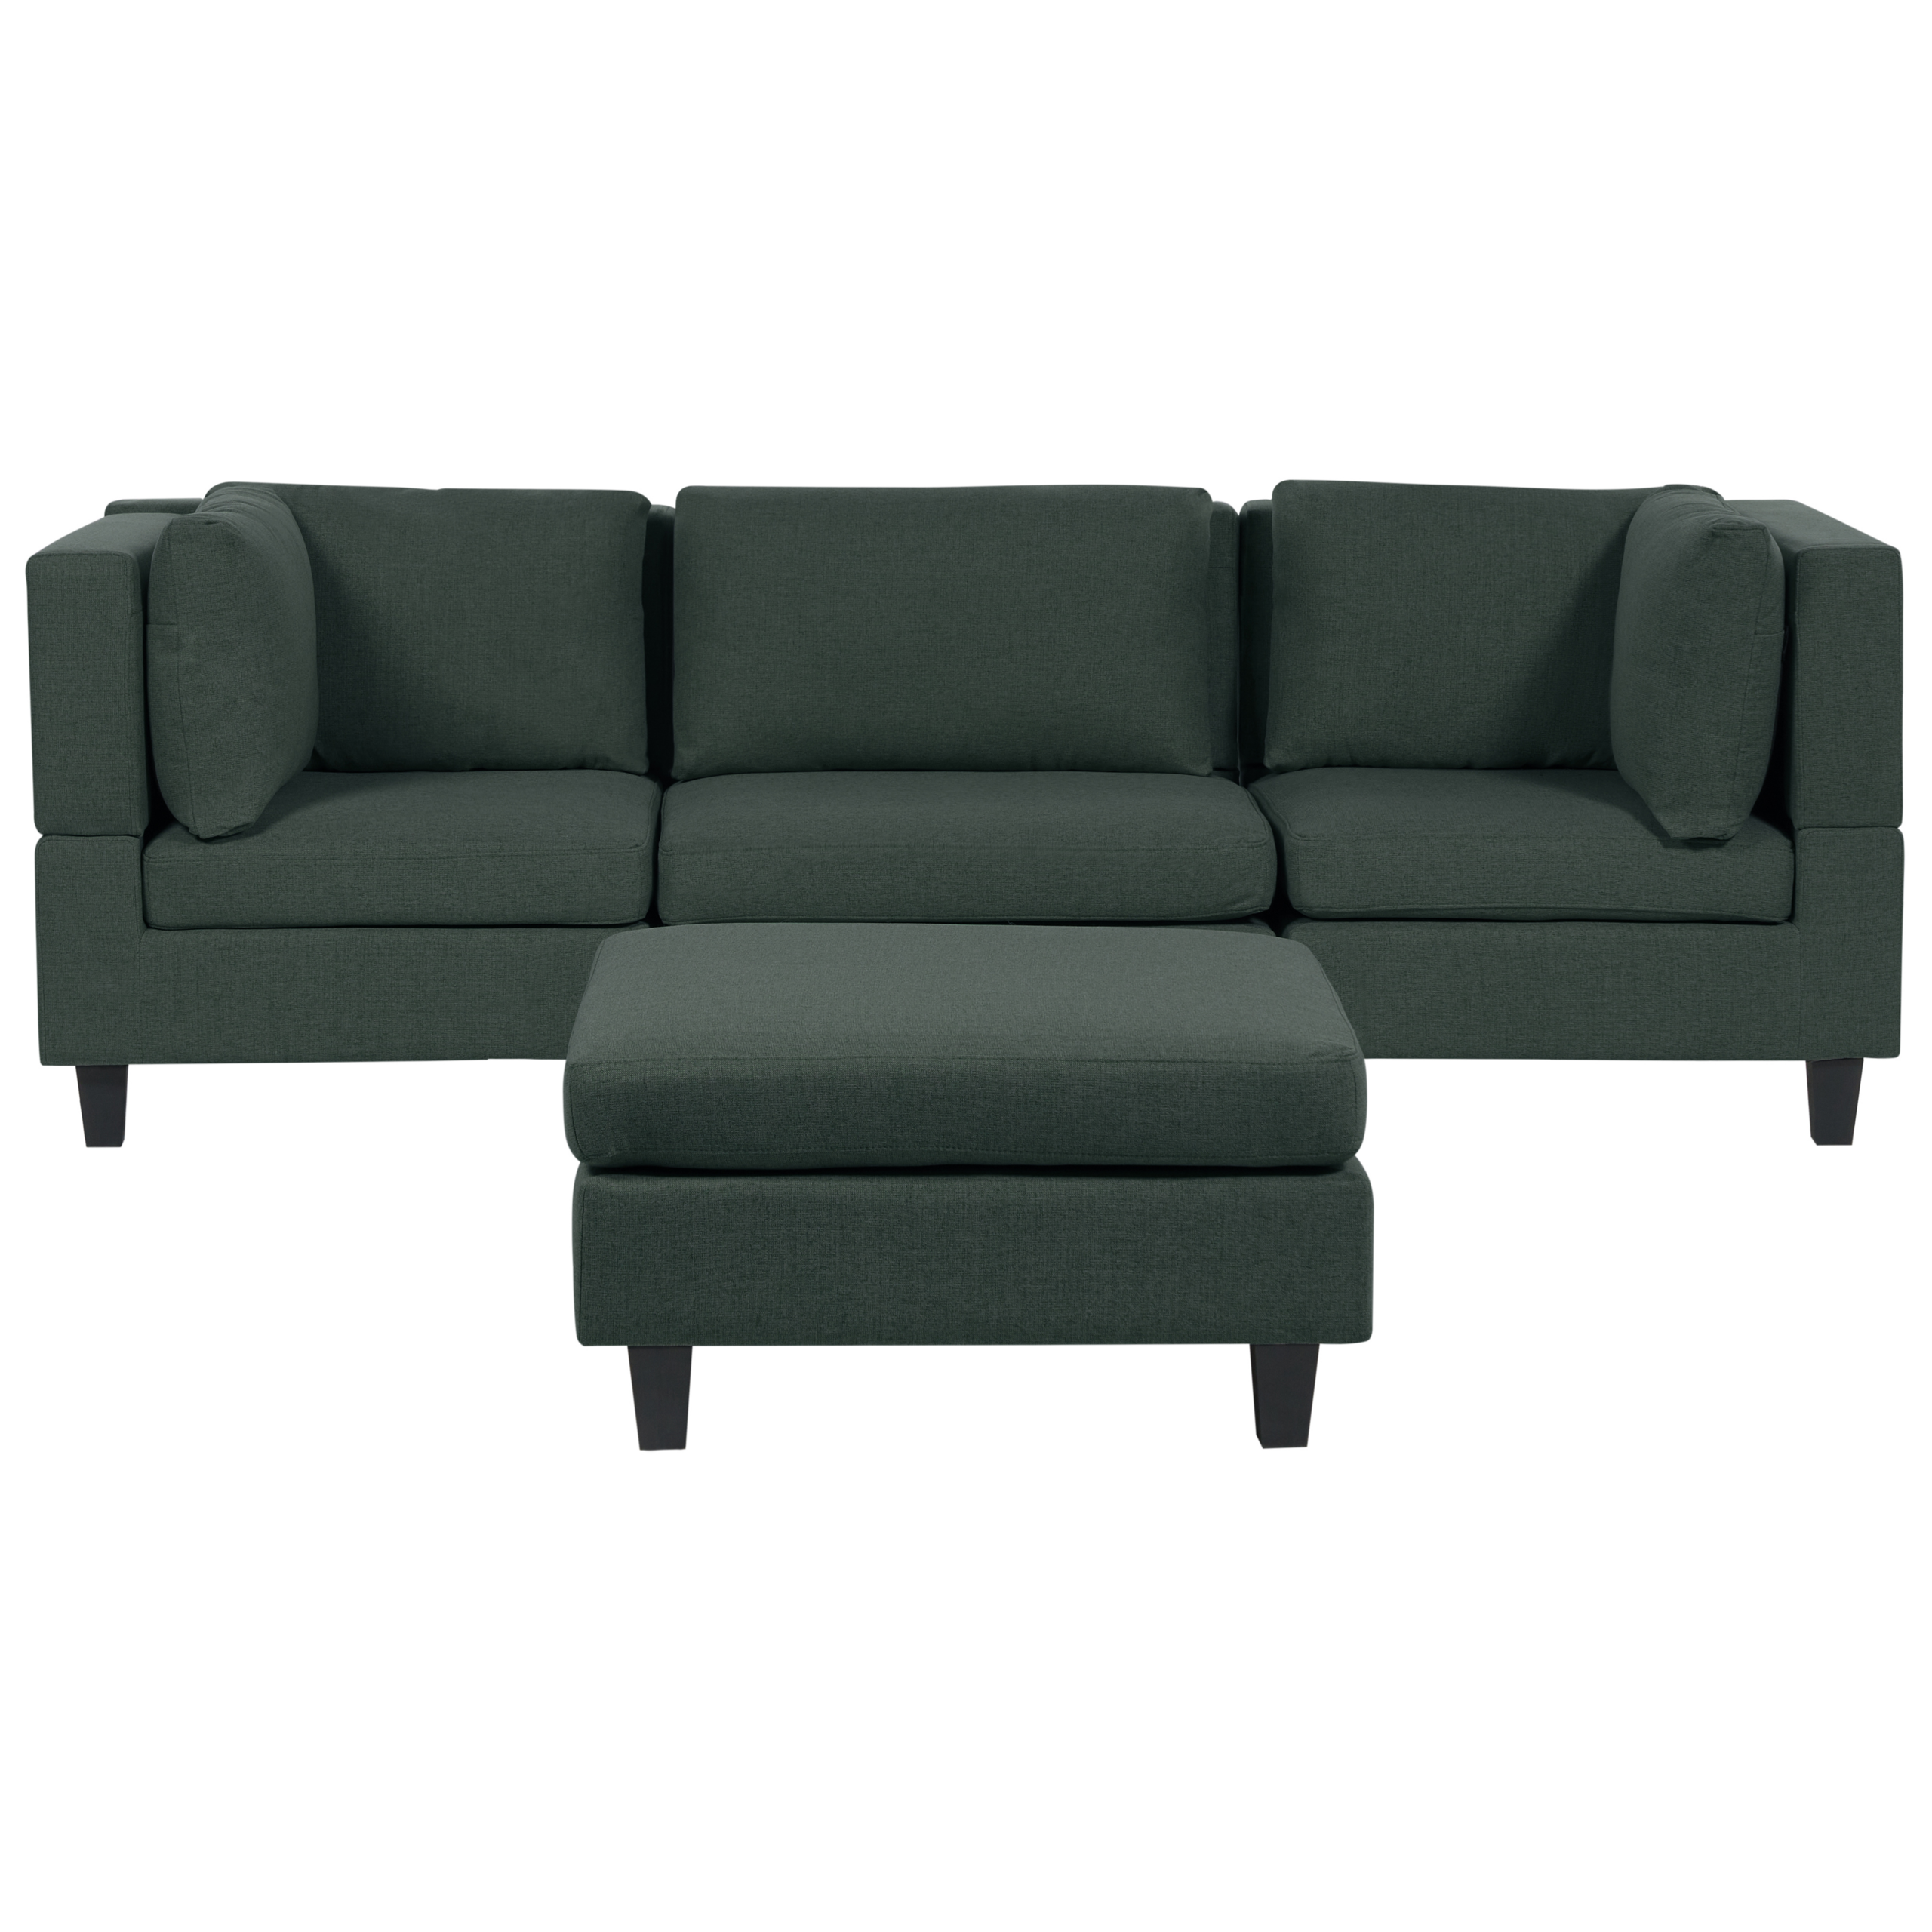 3 Seater Modular & Ottoman Sofa in Dark Green Fabric and Eucalyptus Wood T-